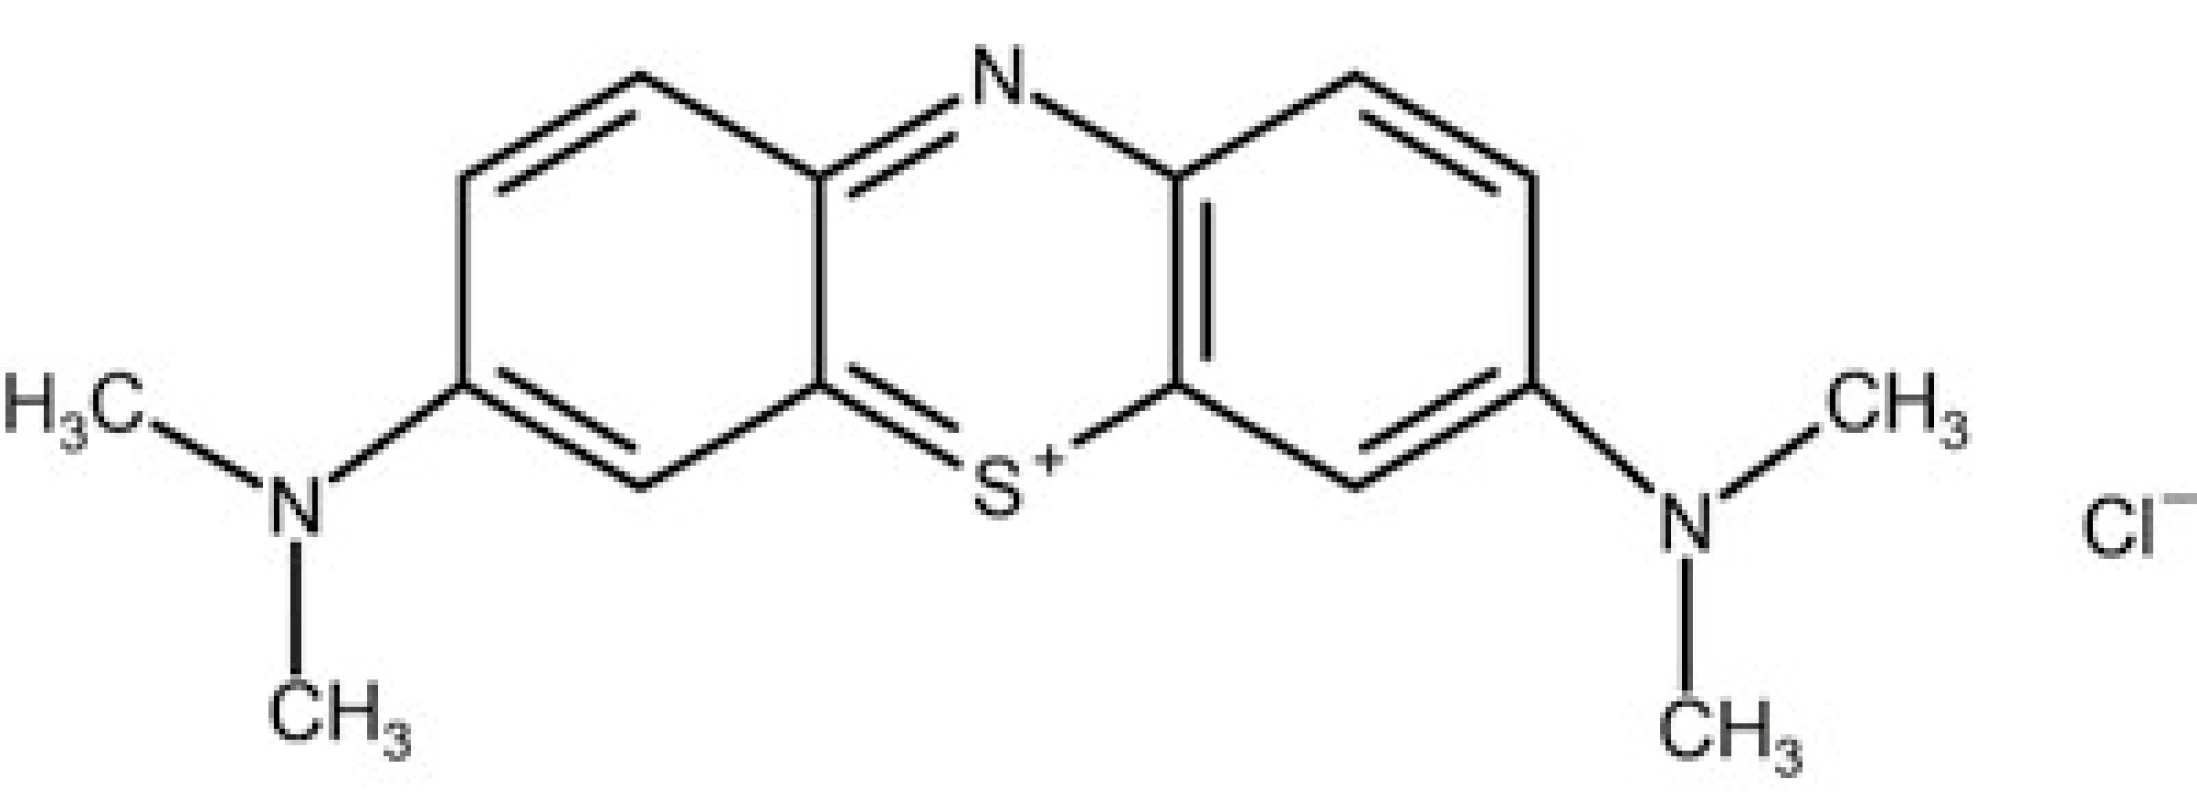 Chemický vzorec methylenové modři